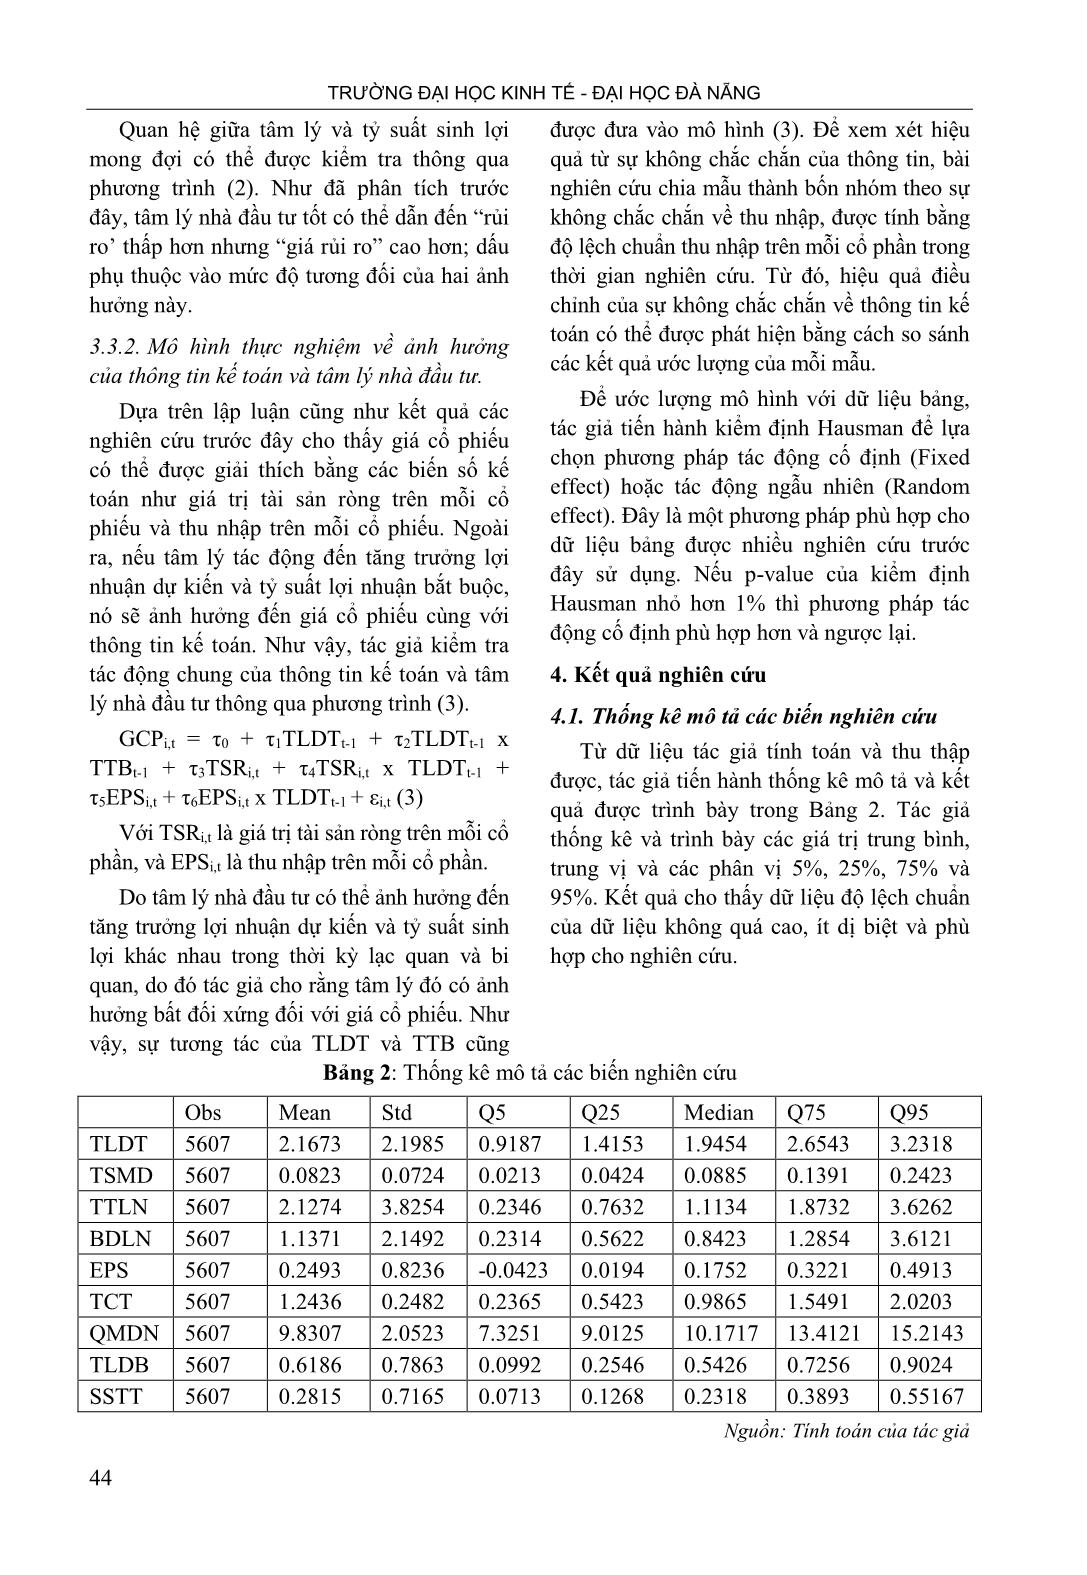 Tâm lý nhà đầu tư, thông tin kế toán và giá cổ phiếu trên thị trường chứng khoán Việt Nam trang 6